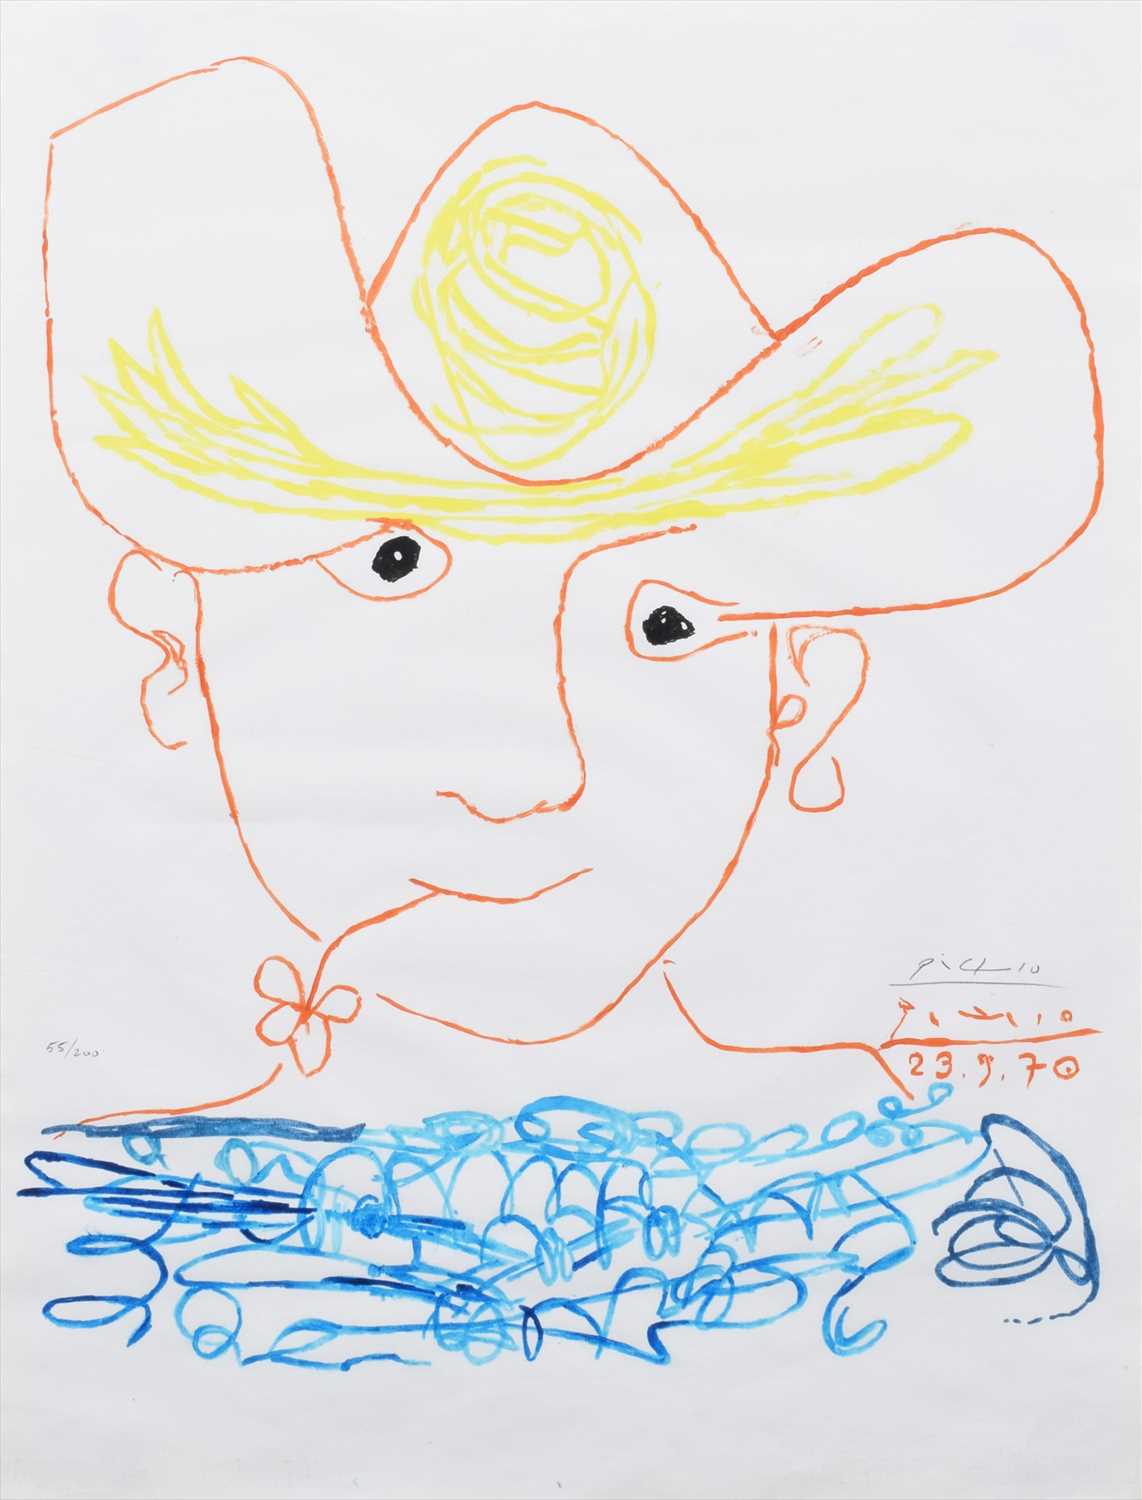 Lot 236 - Pablo Picasso, "Un Homme avec une Fleur", signed lithograph.